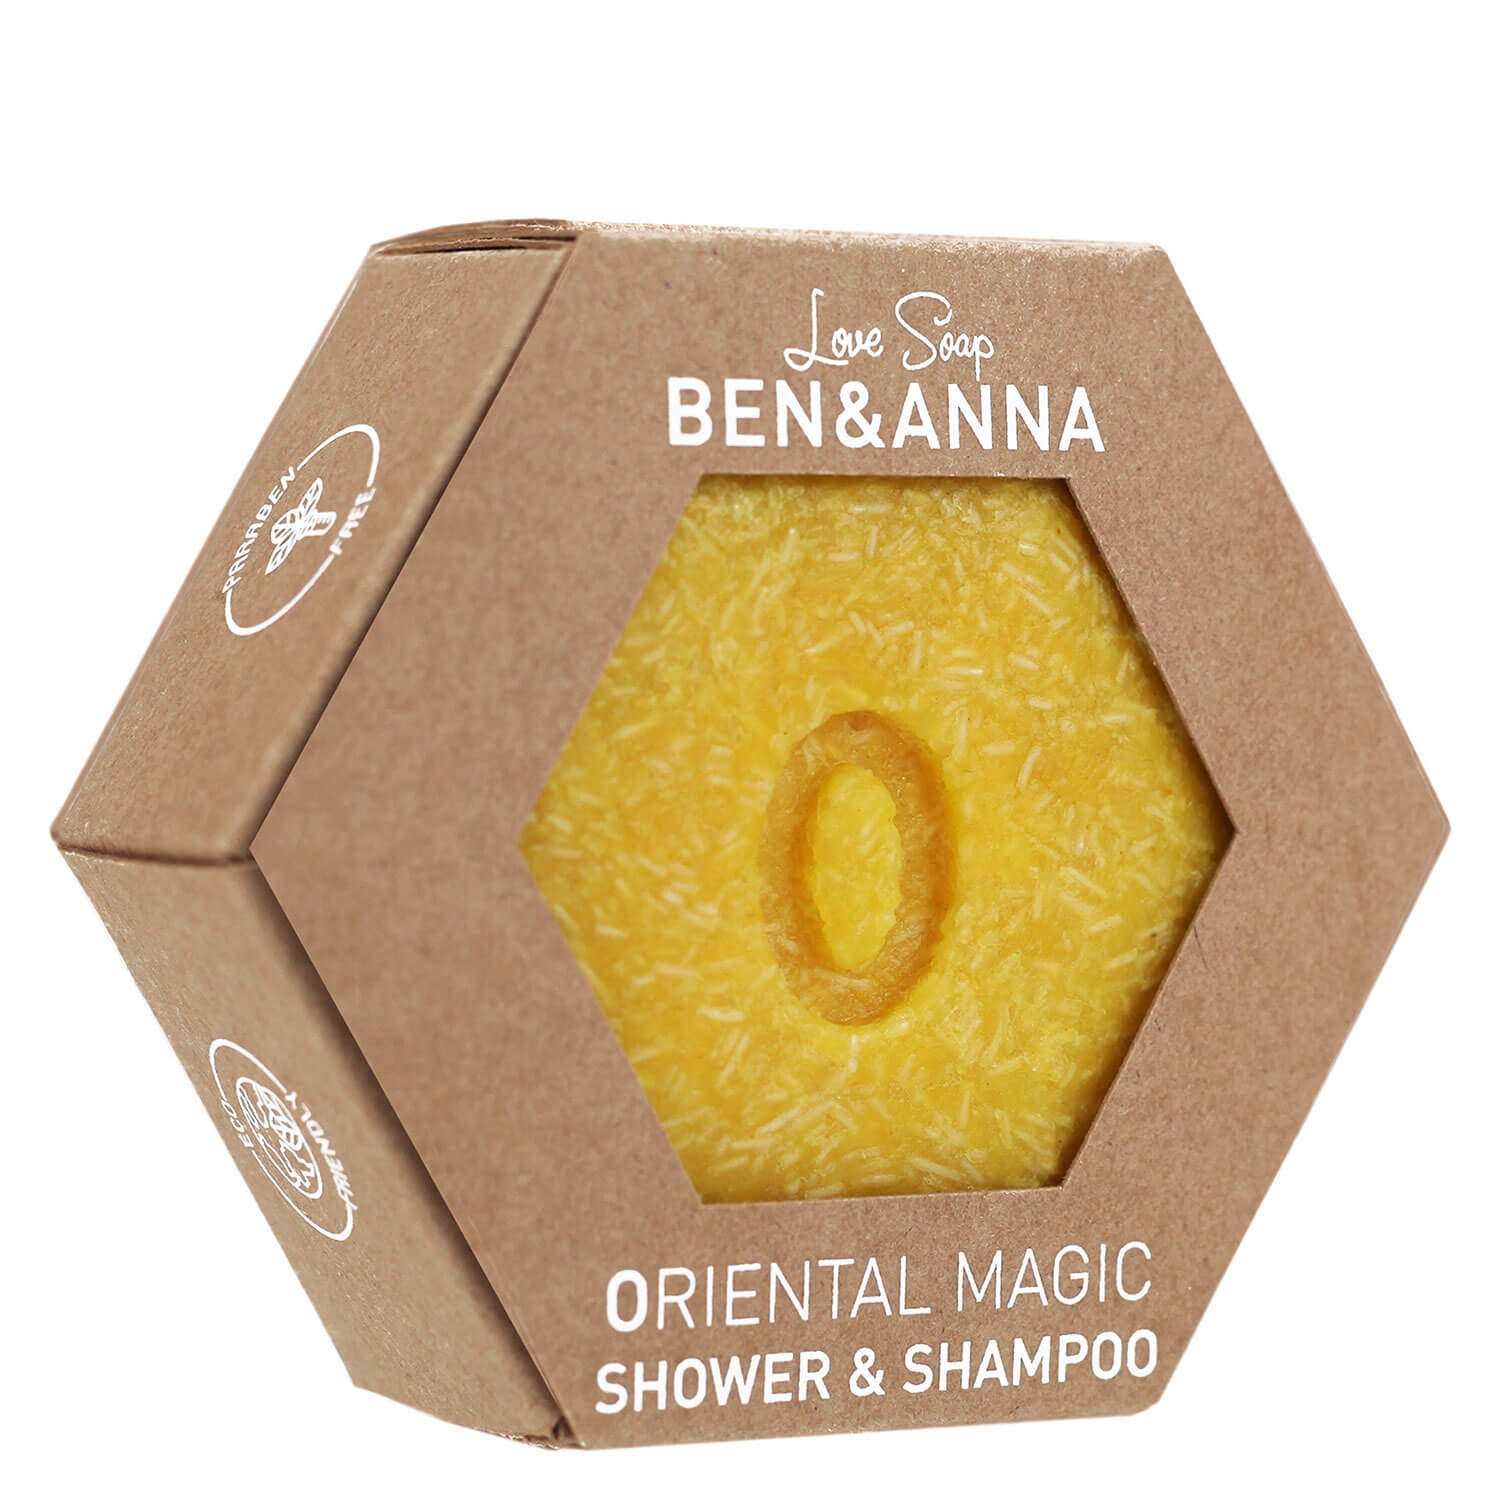 Produktbild von BEN&ANNA - Oriental Magic Shower & Shampoo